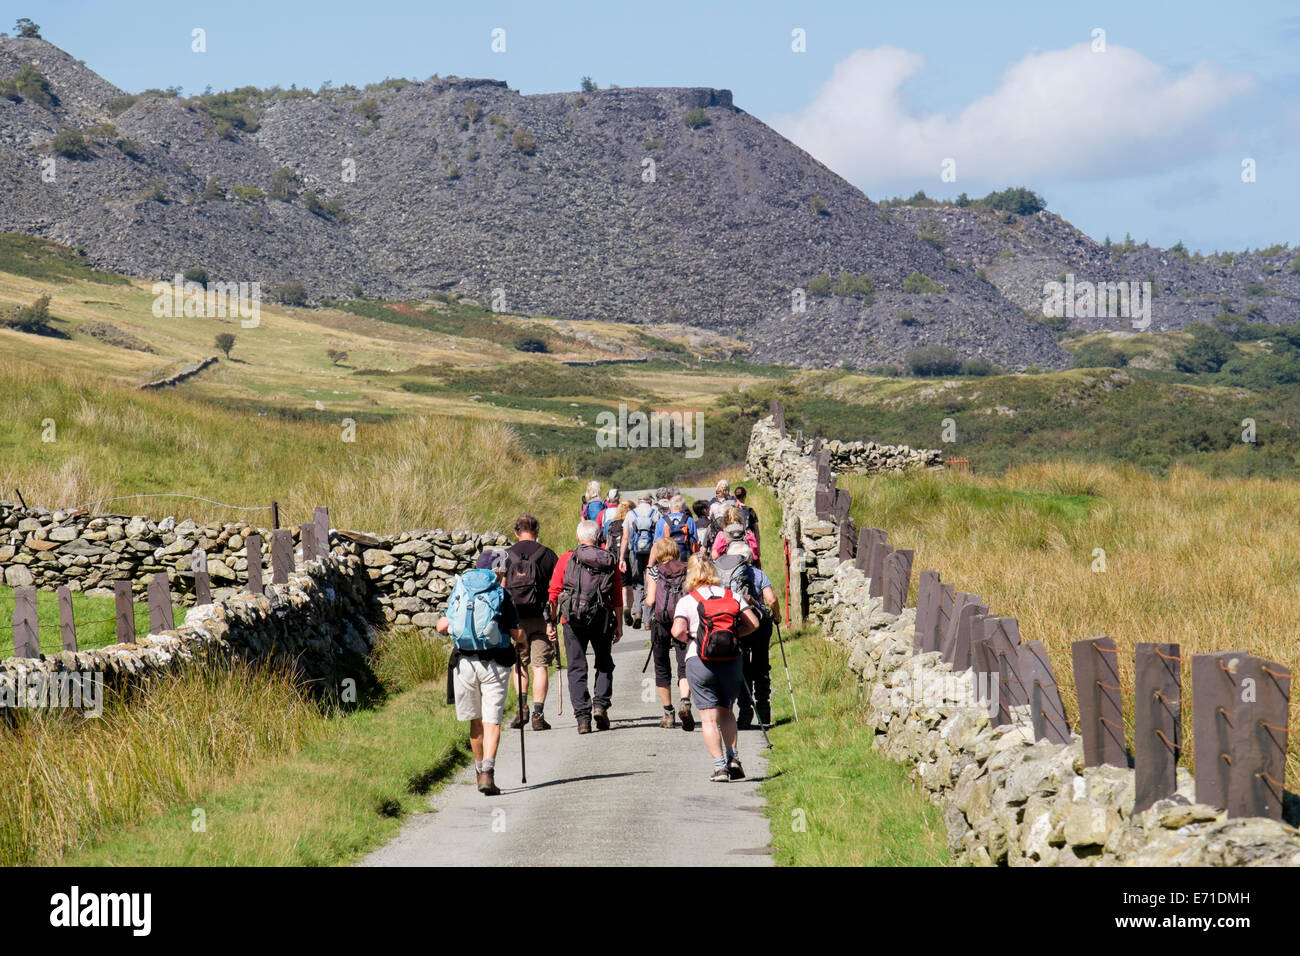 Groupe de randonneurs club de marche randonnée sur un chemin de campagne à Nant Ffrancon Valley dans le parc national de Snowdonia. Bethesda, Gwynedd, au nord du Pays de Galles, Royaume-Uni Grande-Bretagne Banque D'Images